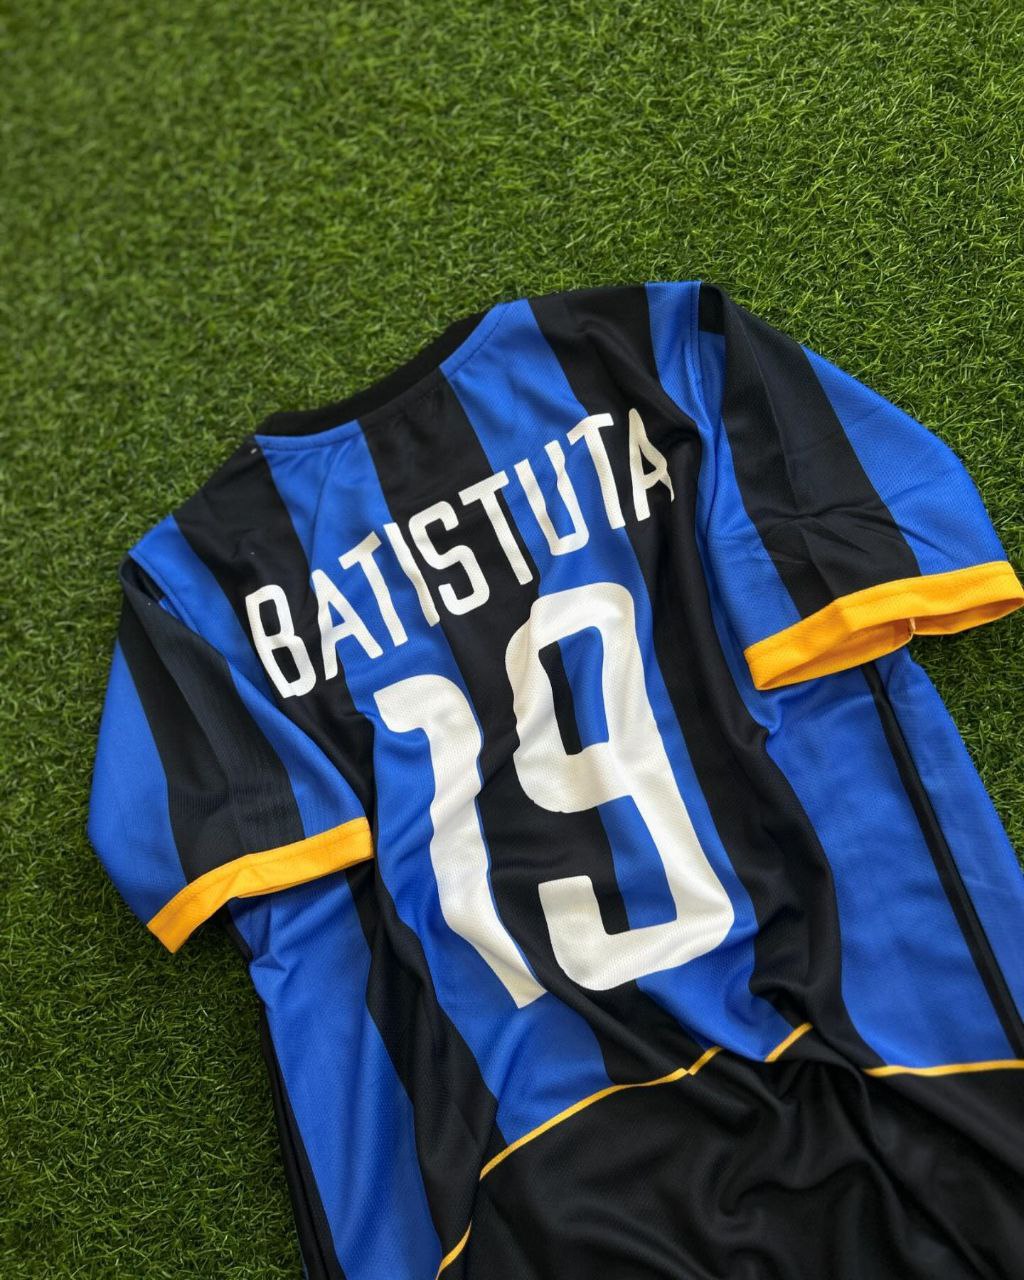 Gabriel Batistuta Inter Retro Jersey